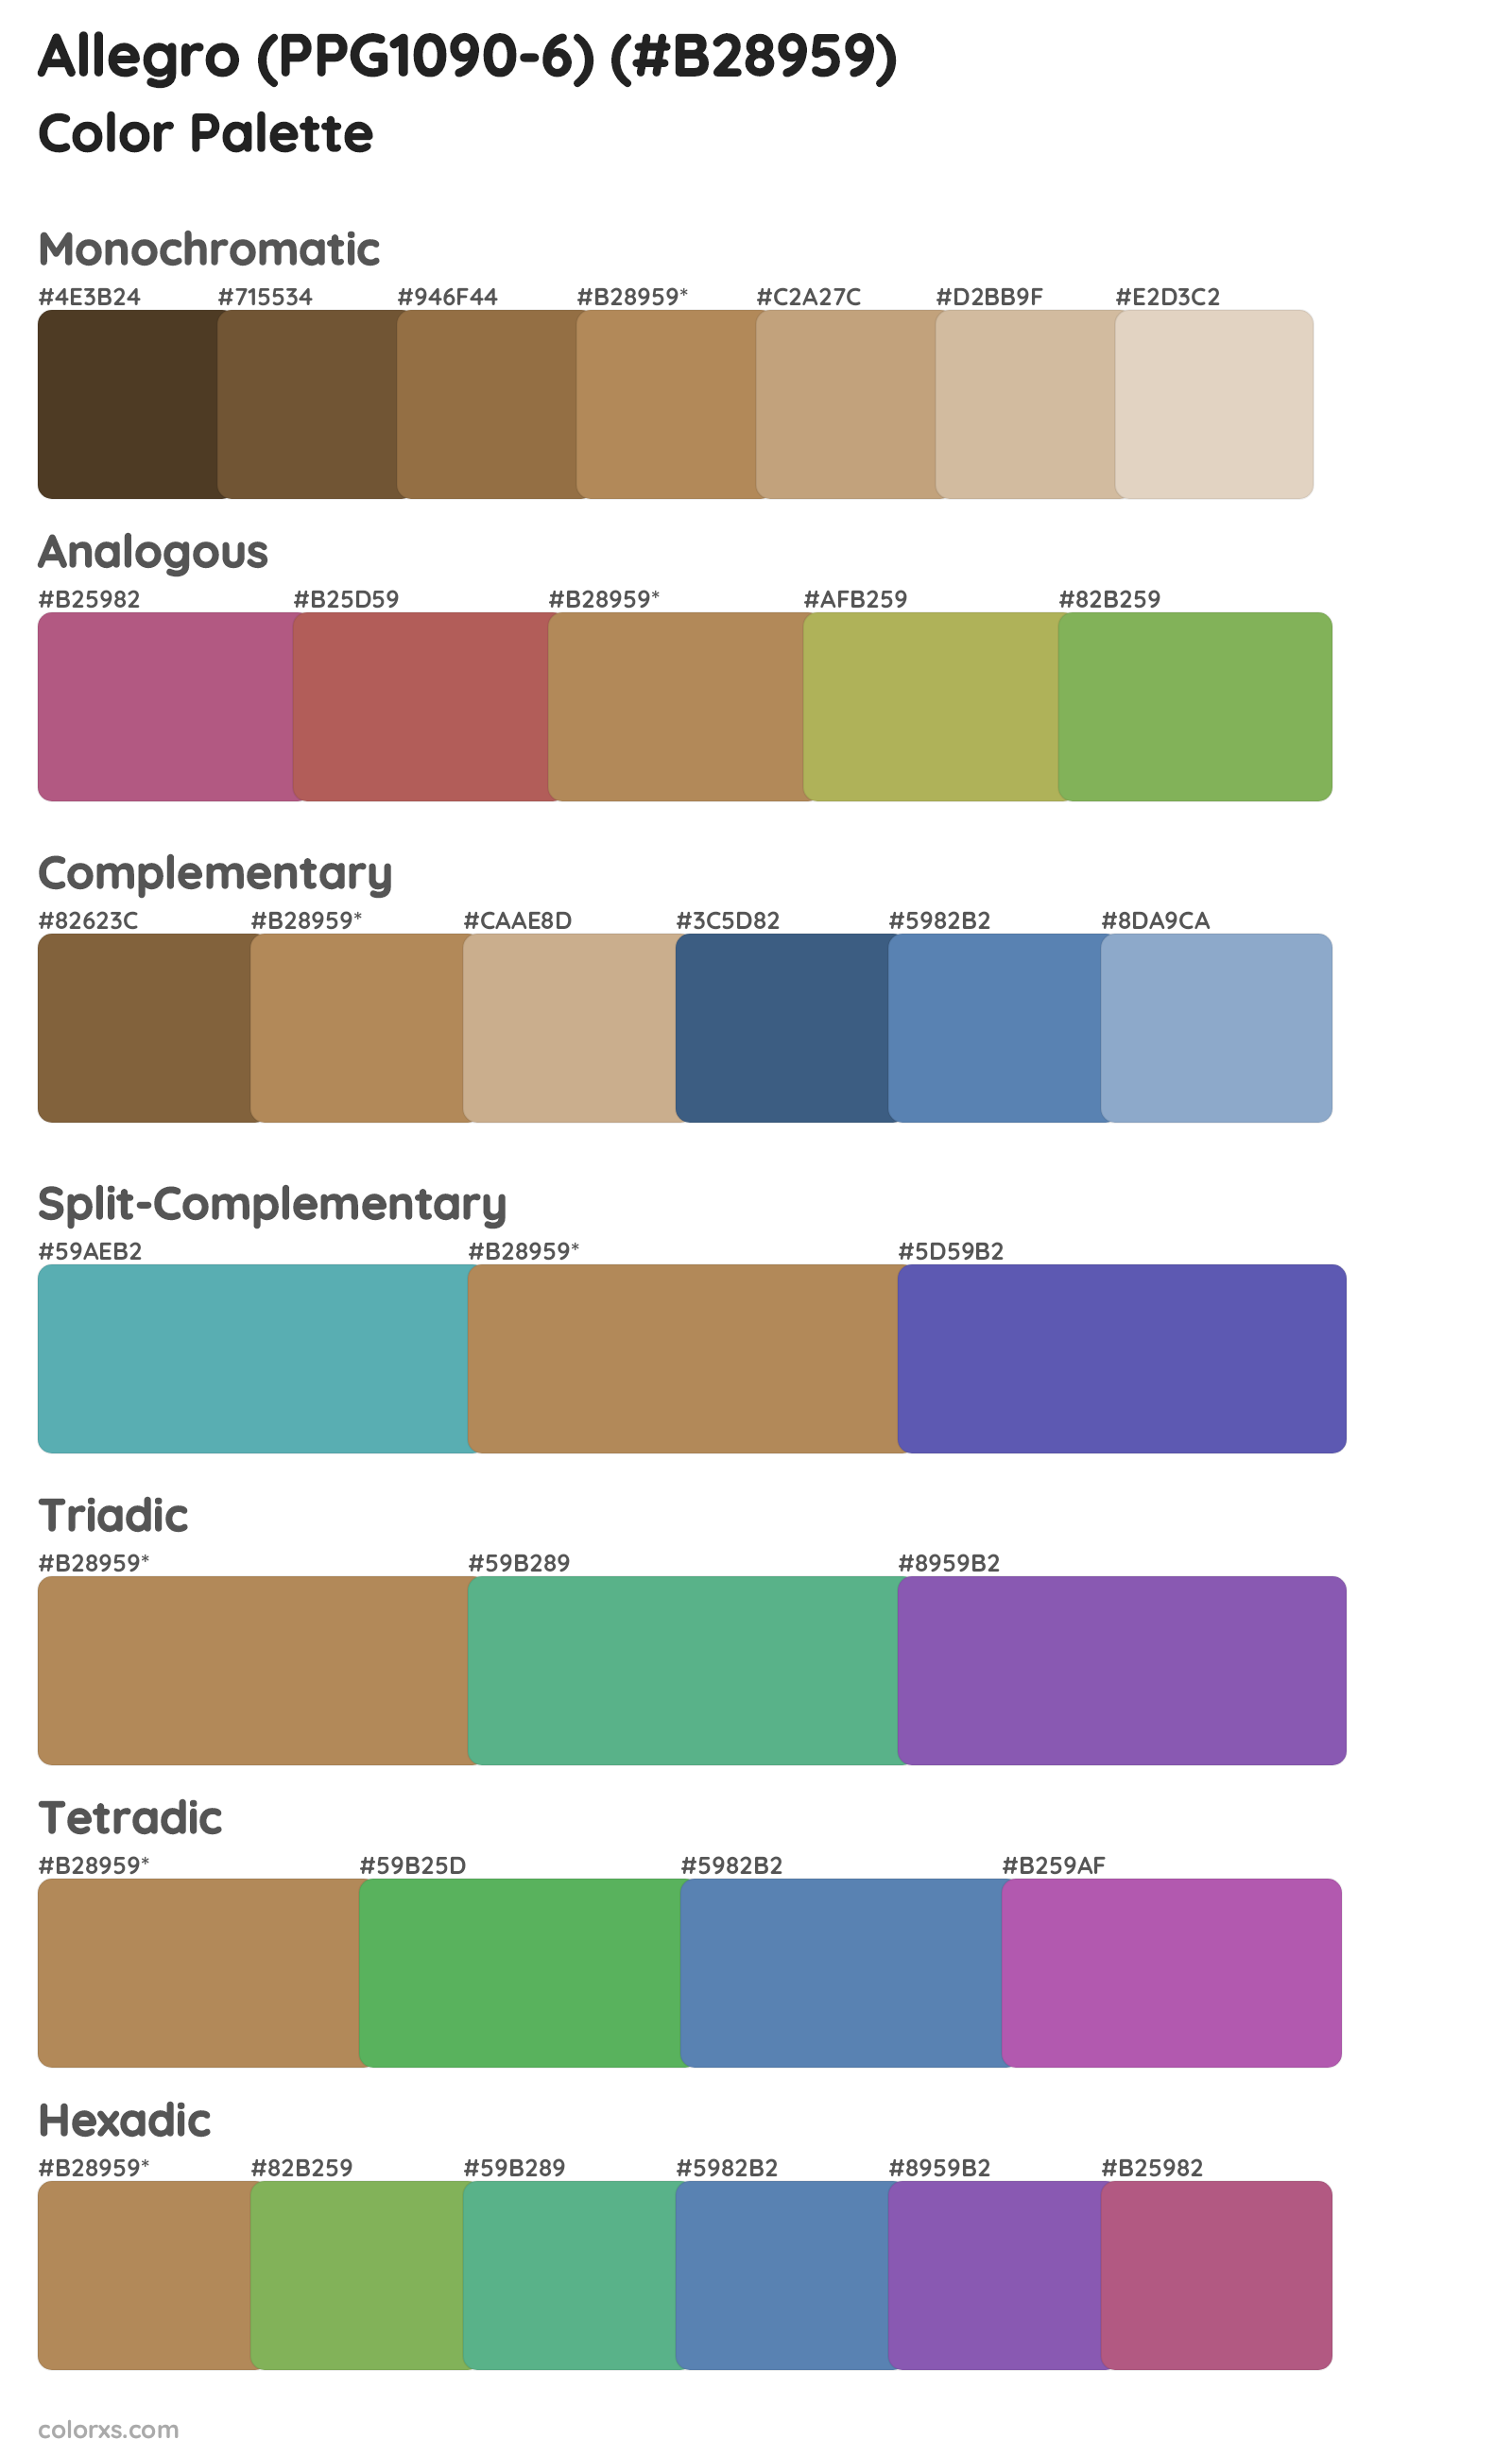 Allegro (PPG1090-6) Color Scheme Palettes